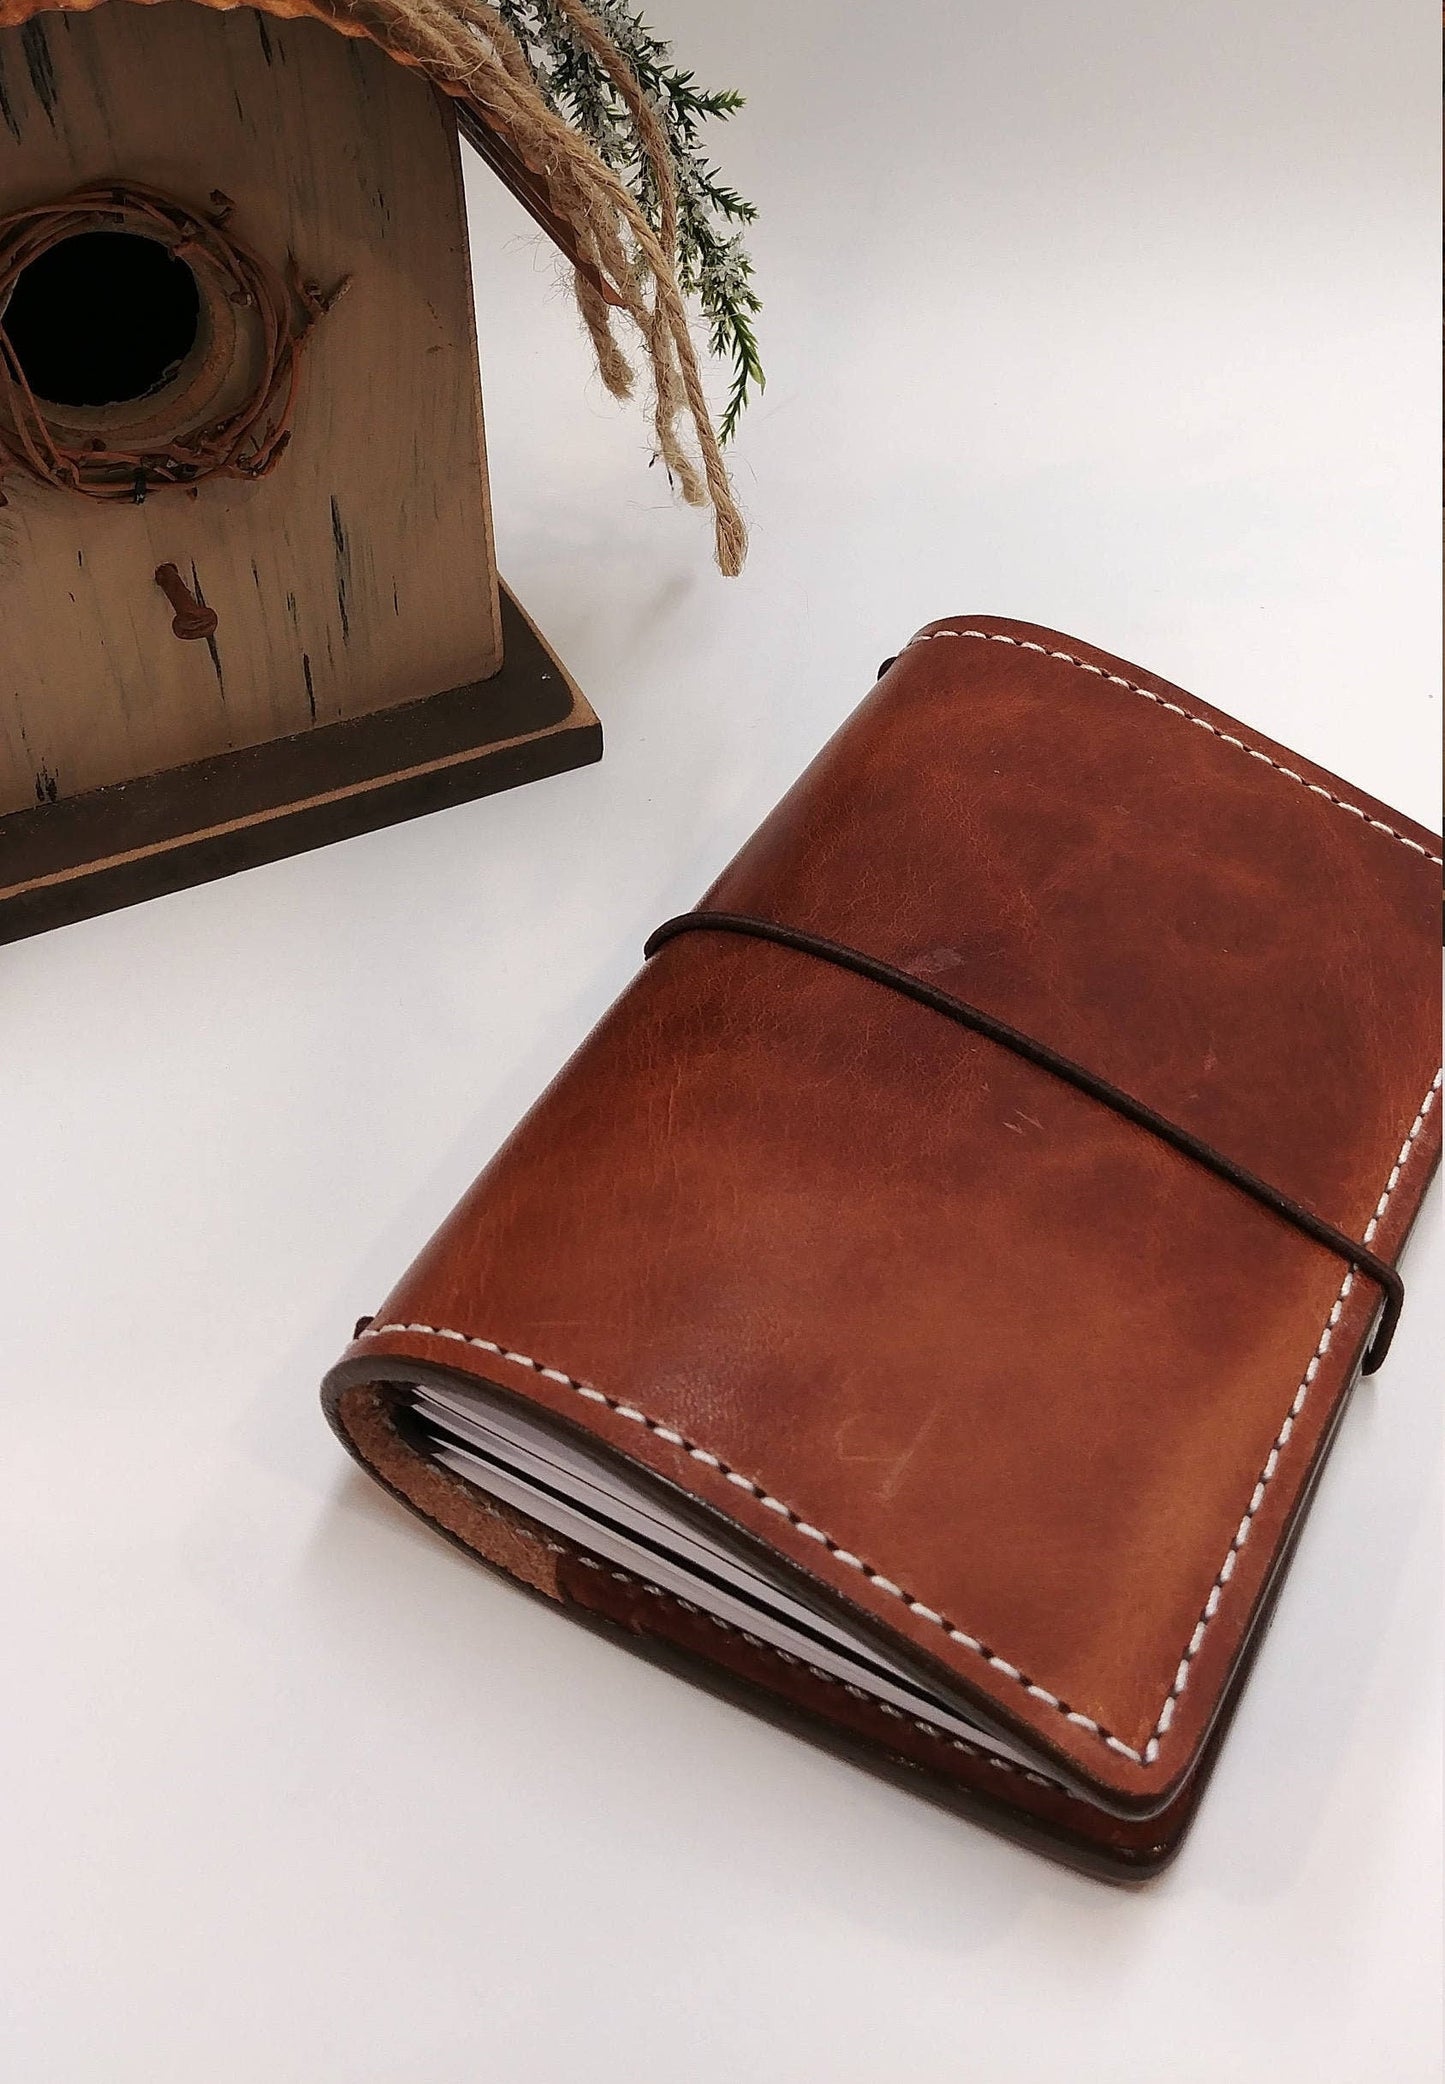 Pocket DELUXE Traveler's Notebook | Full Grain Leather Journal Cover